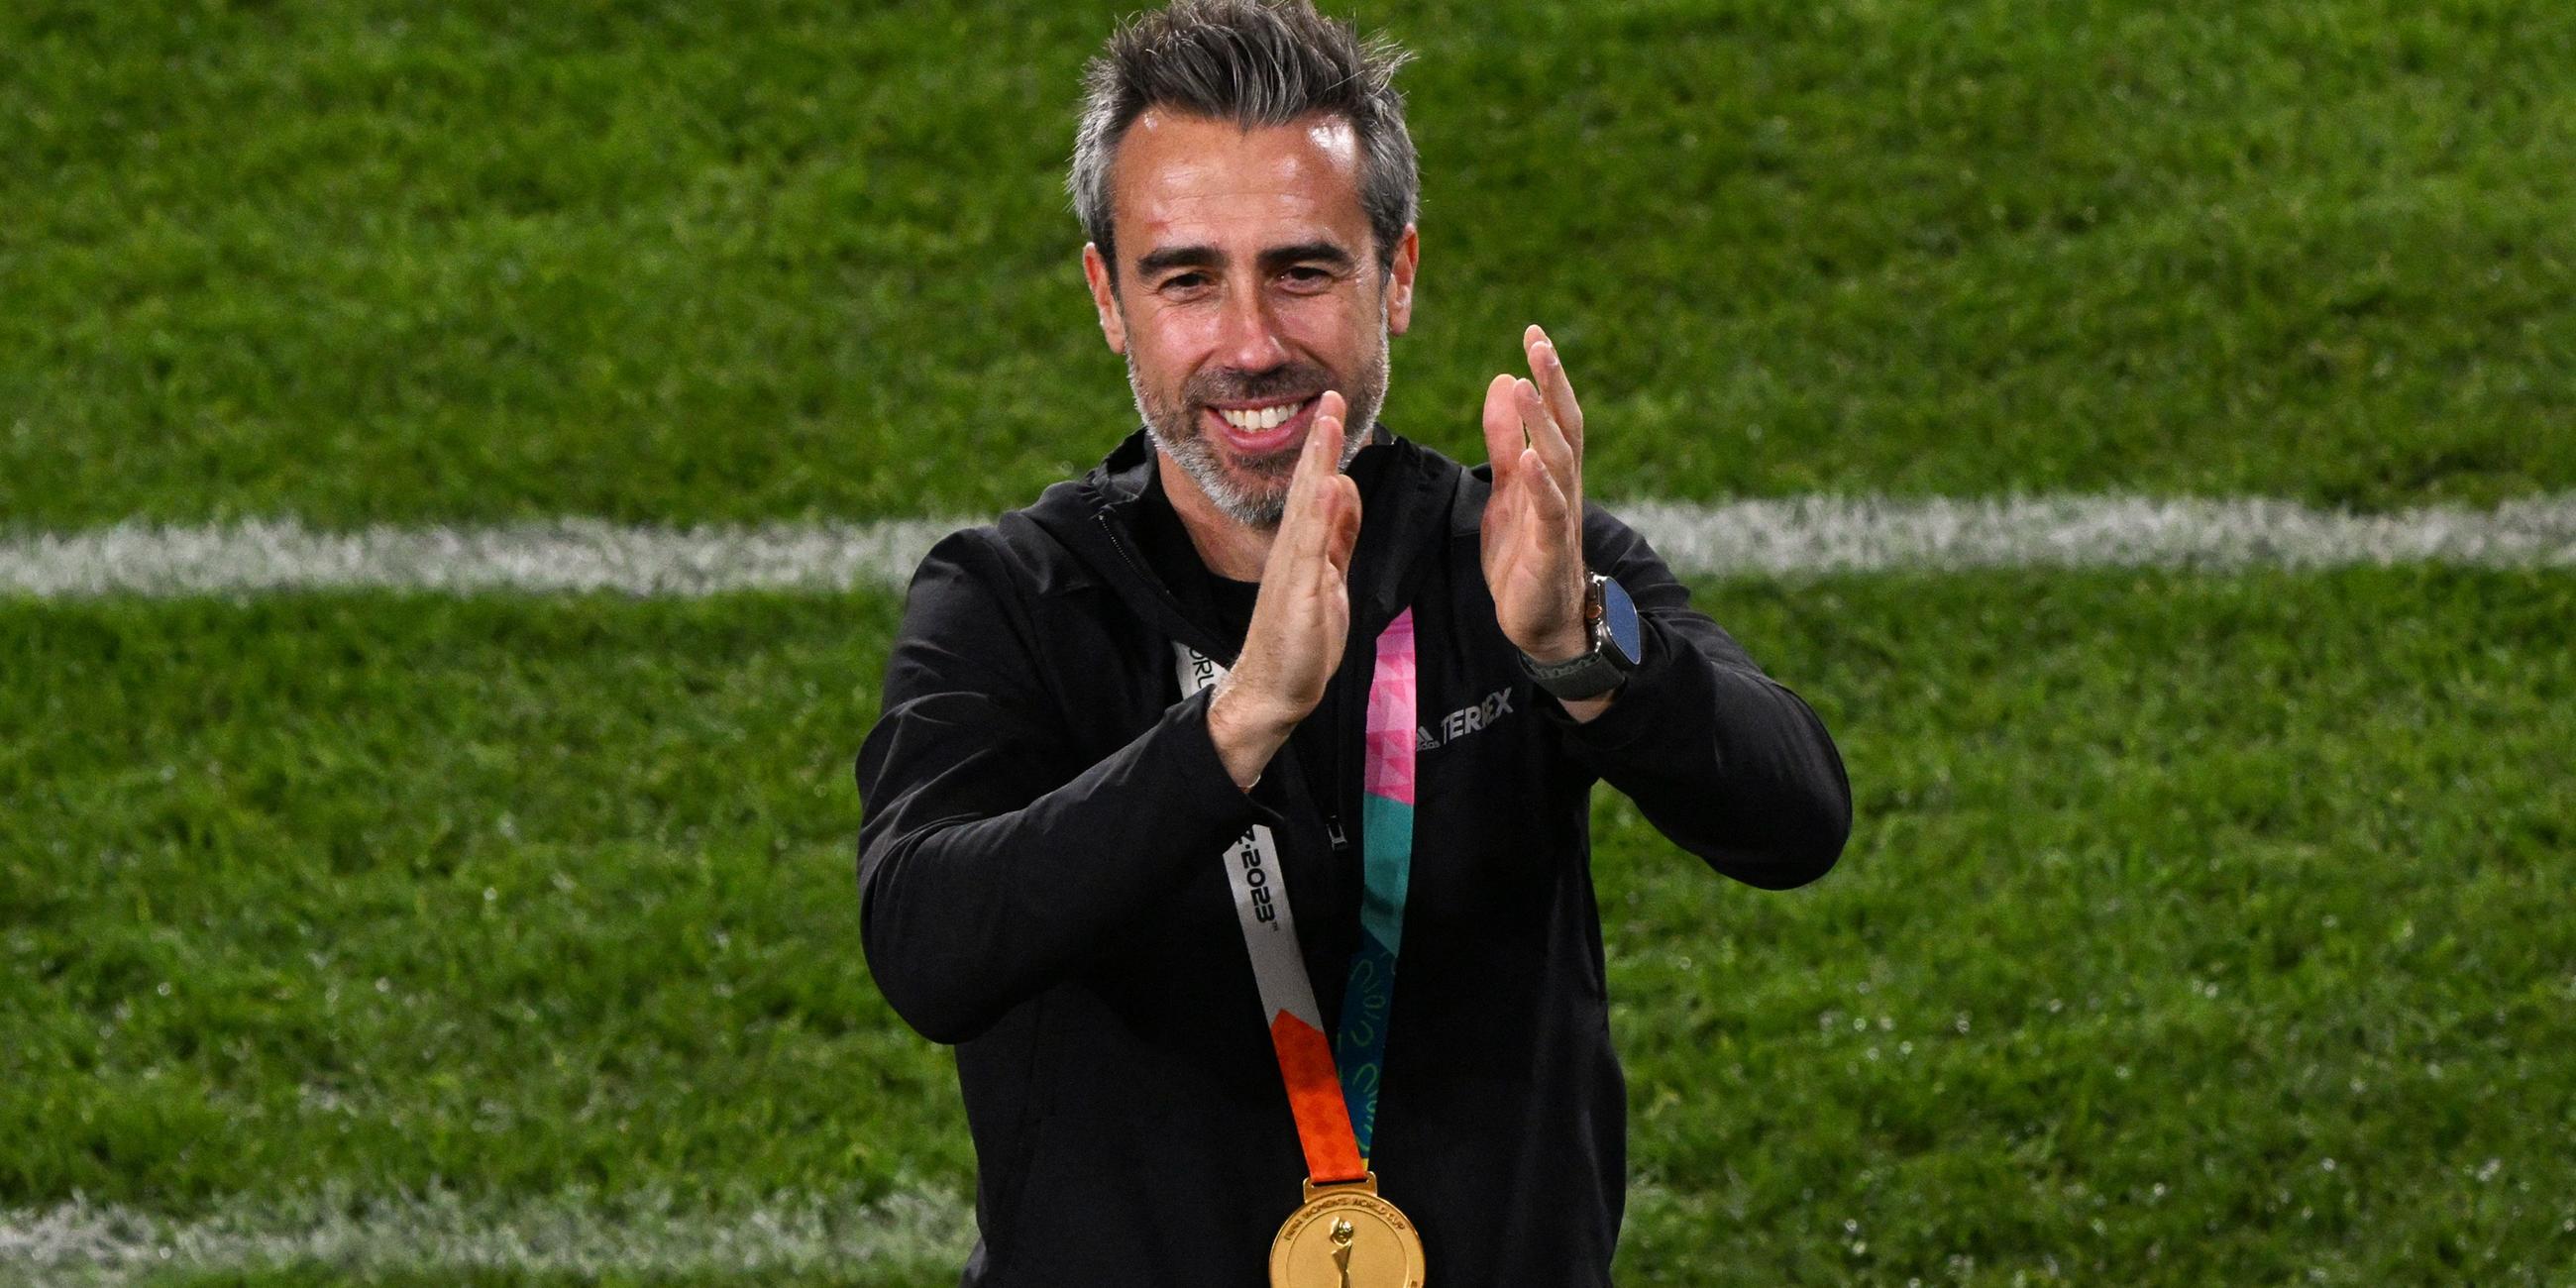 Jorge Vilda klatscht Applaus nach dem Finale der Frauen-WM 2023 Spanien - England.